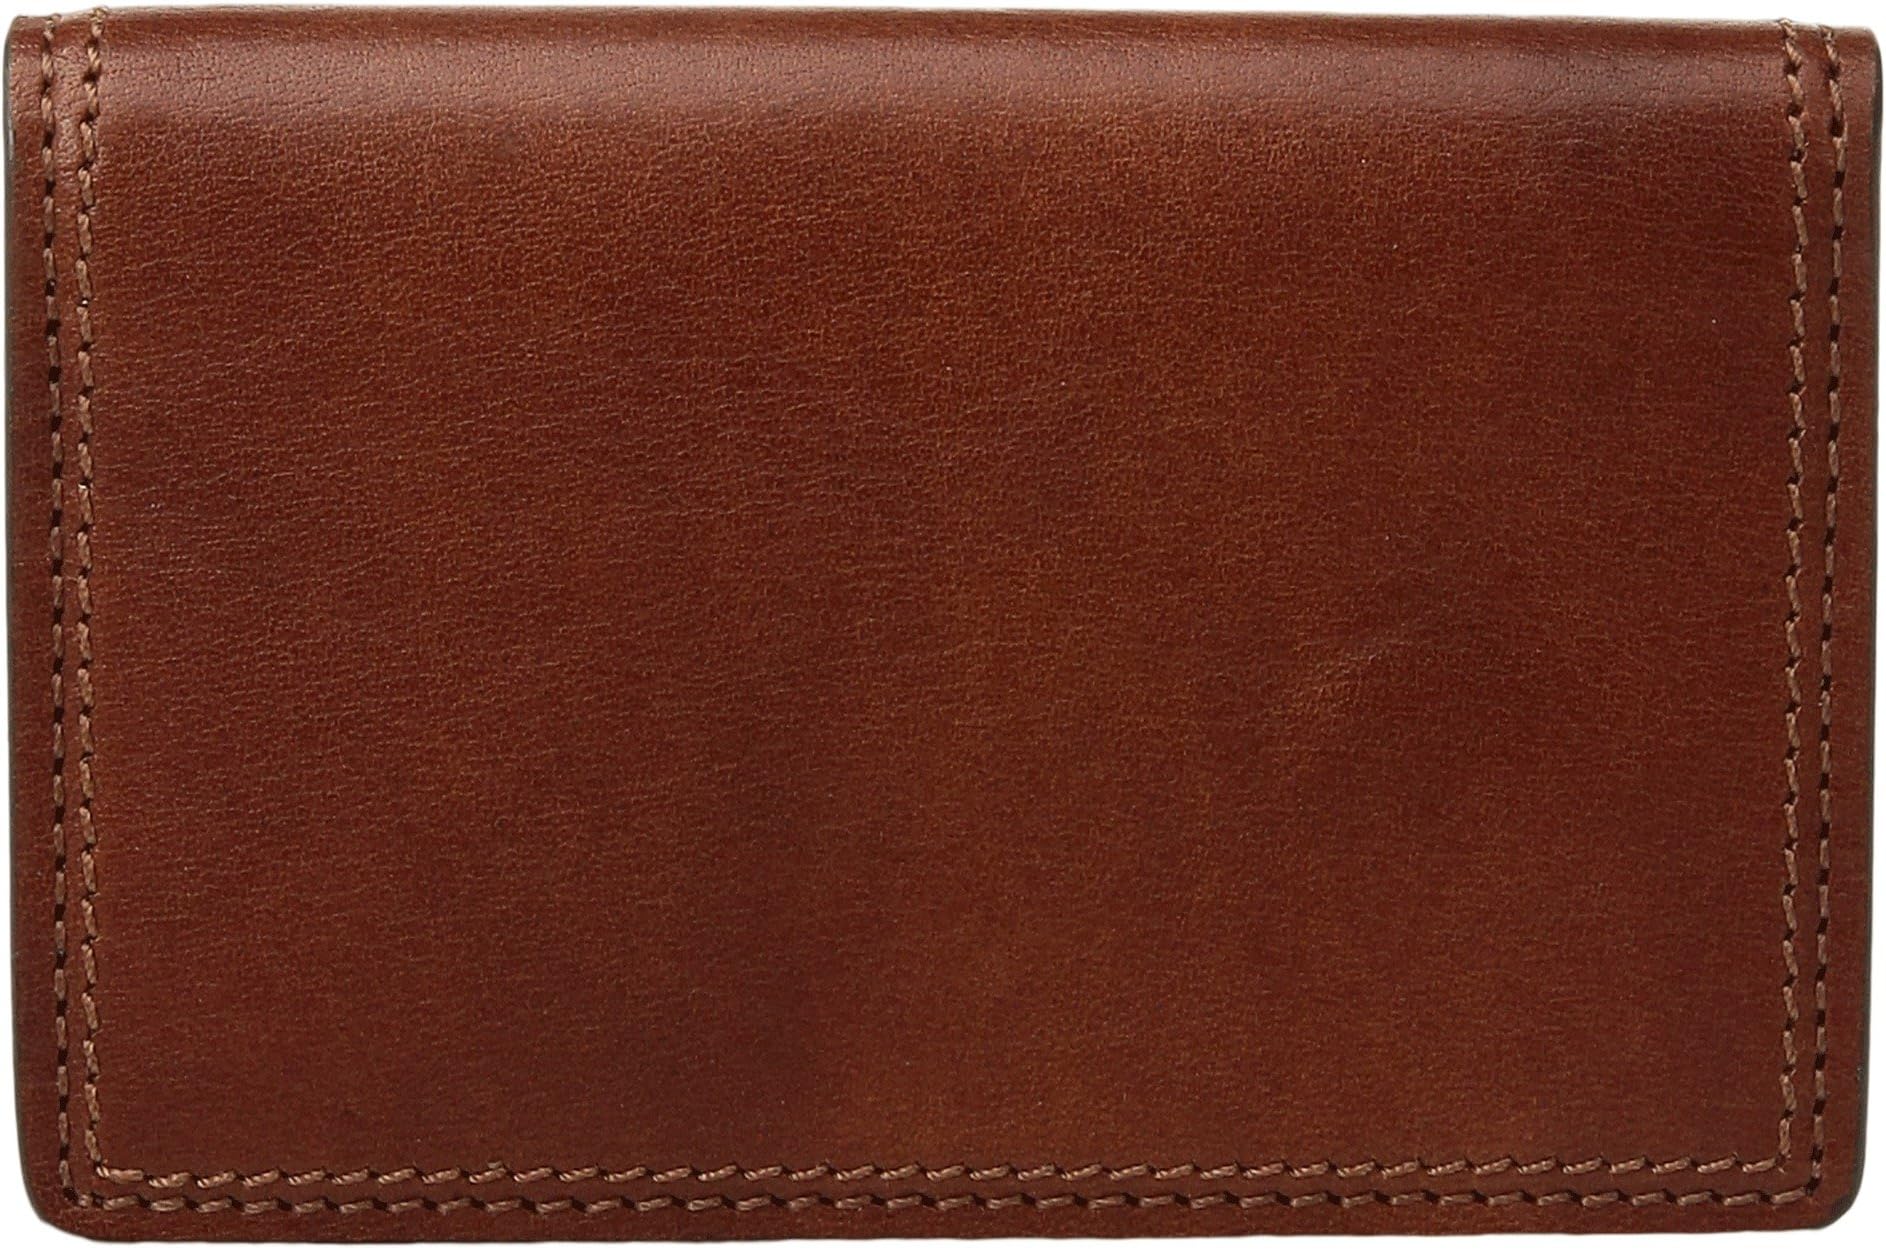 Коллекция Dolce — футляр для визиток с двумя карманами и внутренней отделкой, с удостоверением личности. Bosca, цвет Amber amber